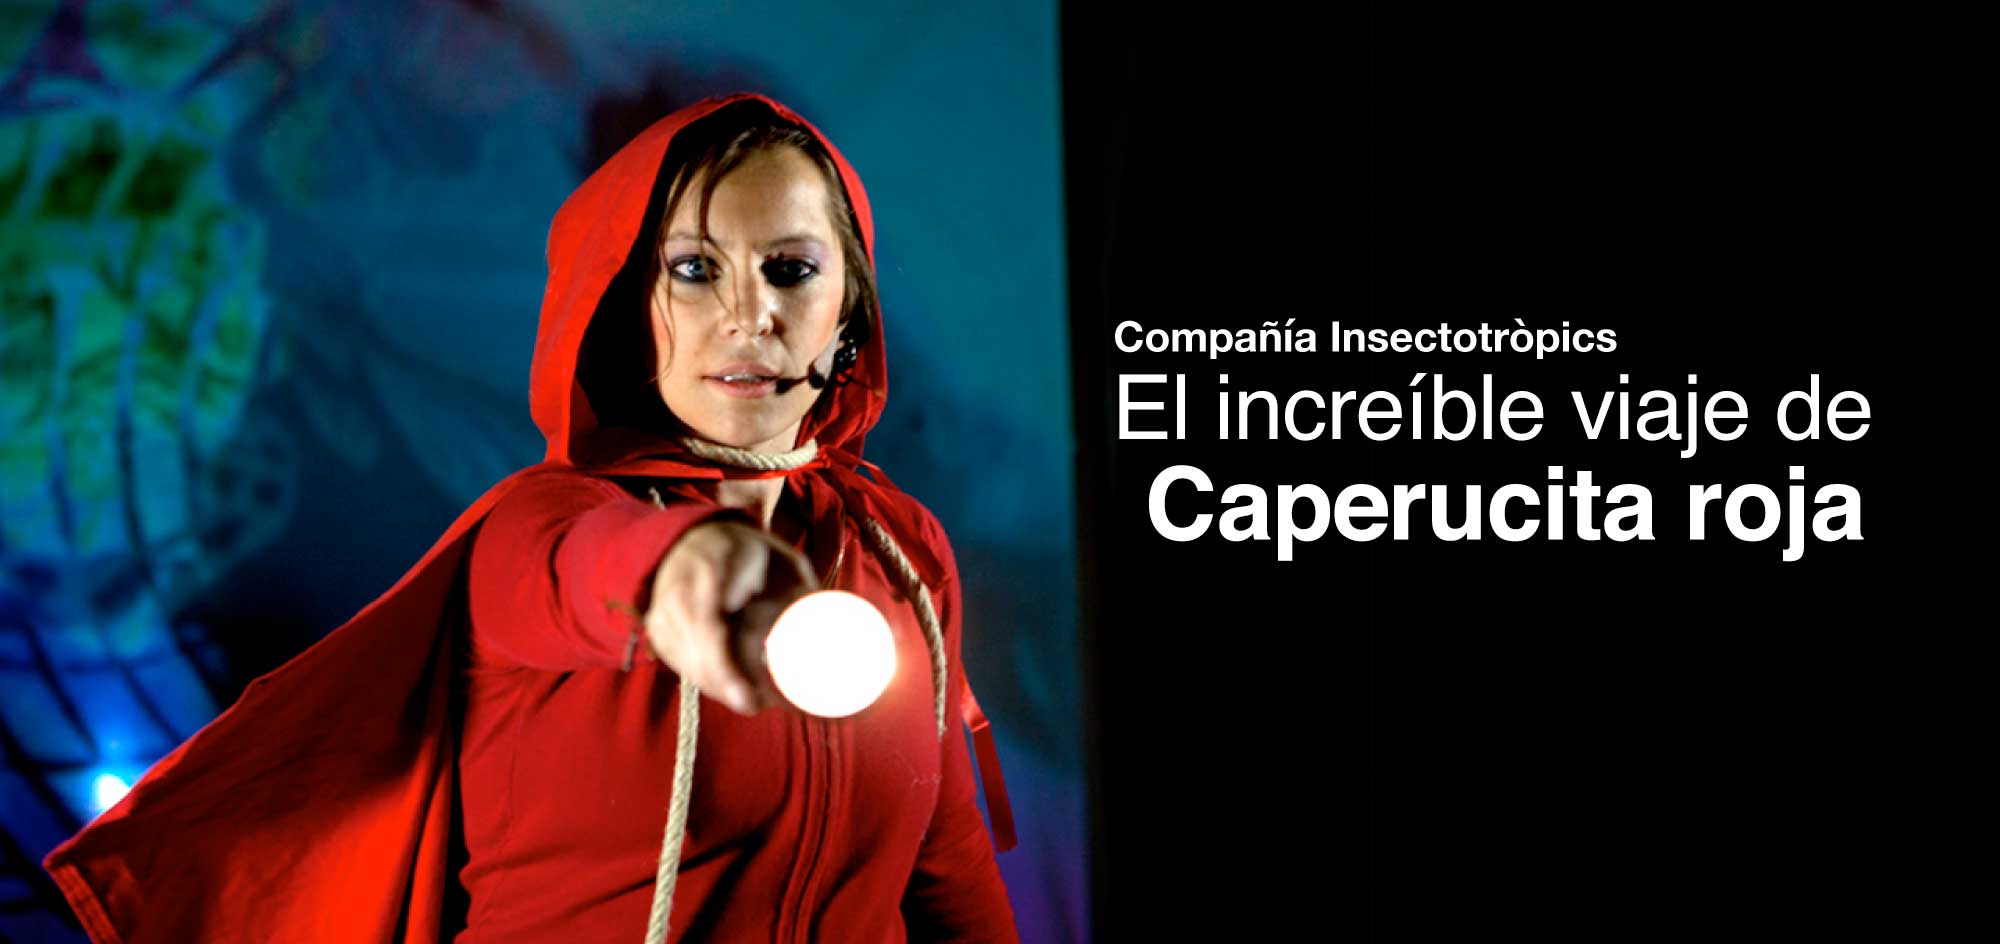 Caperucita Roja – Teatro Carolina